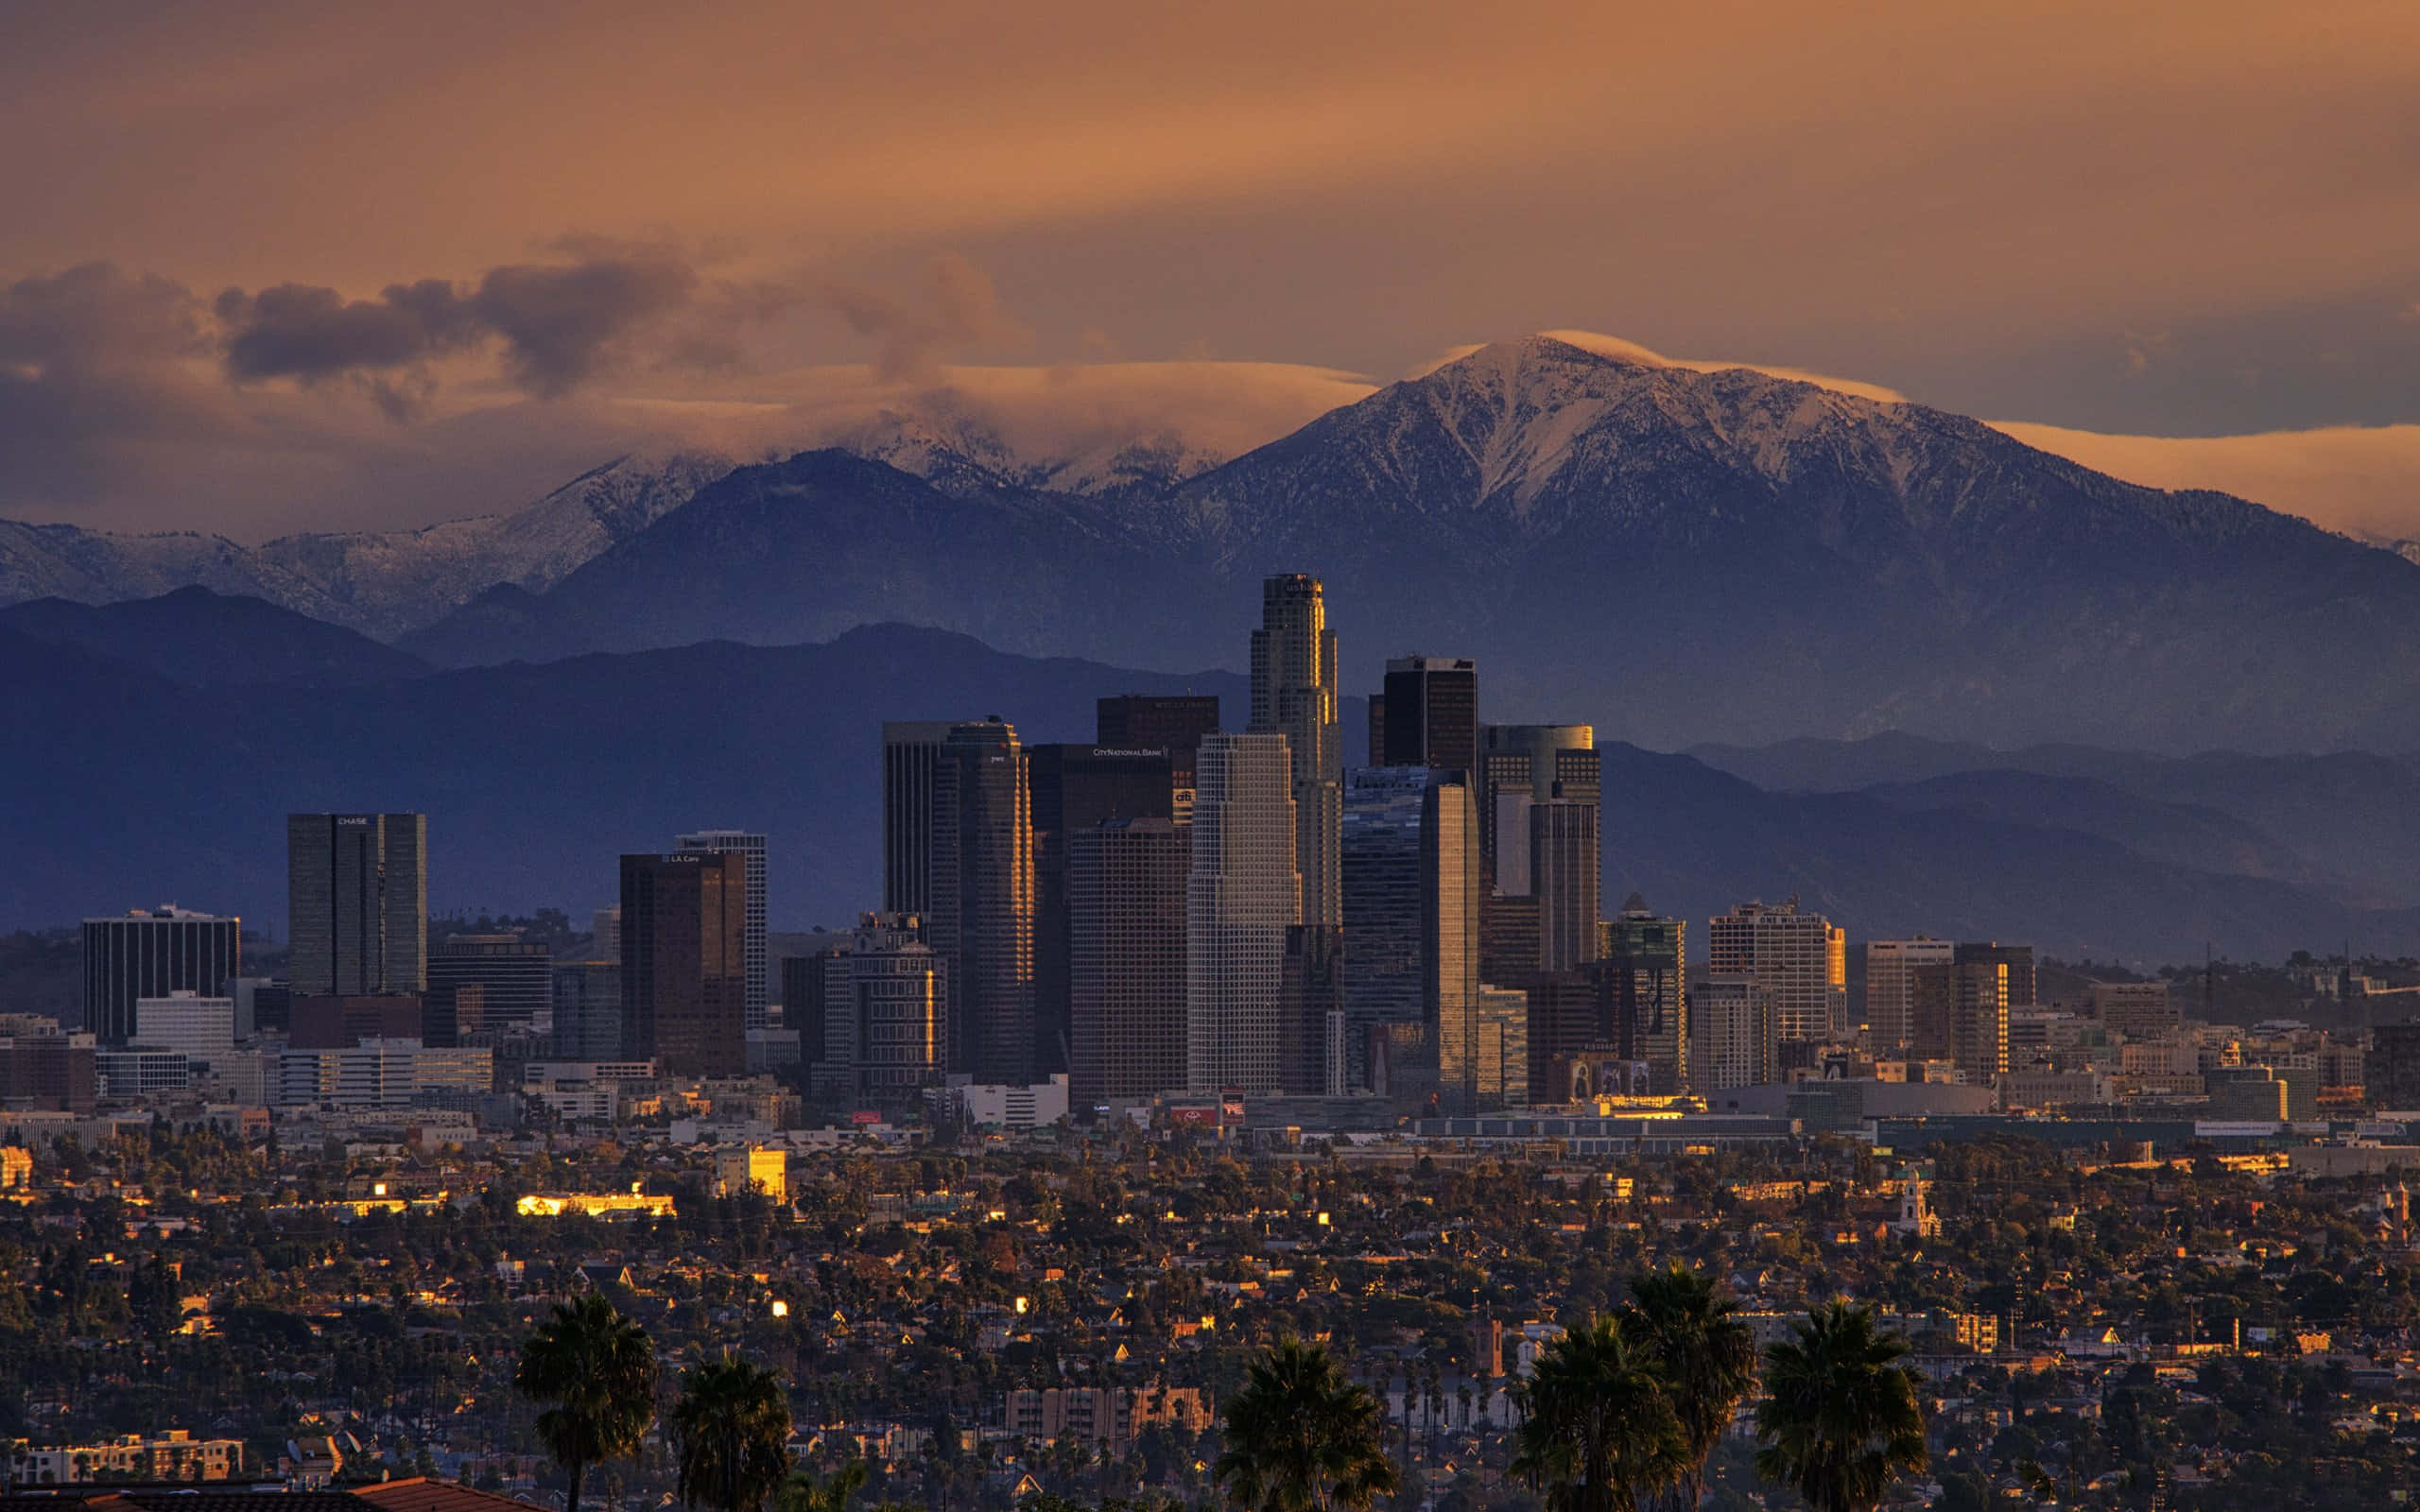 Hintergrundvon Los Angeles In 2560 X 1600